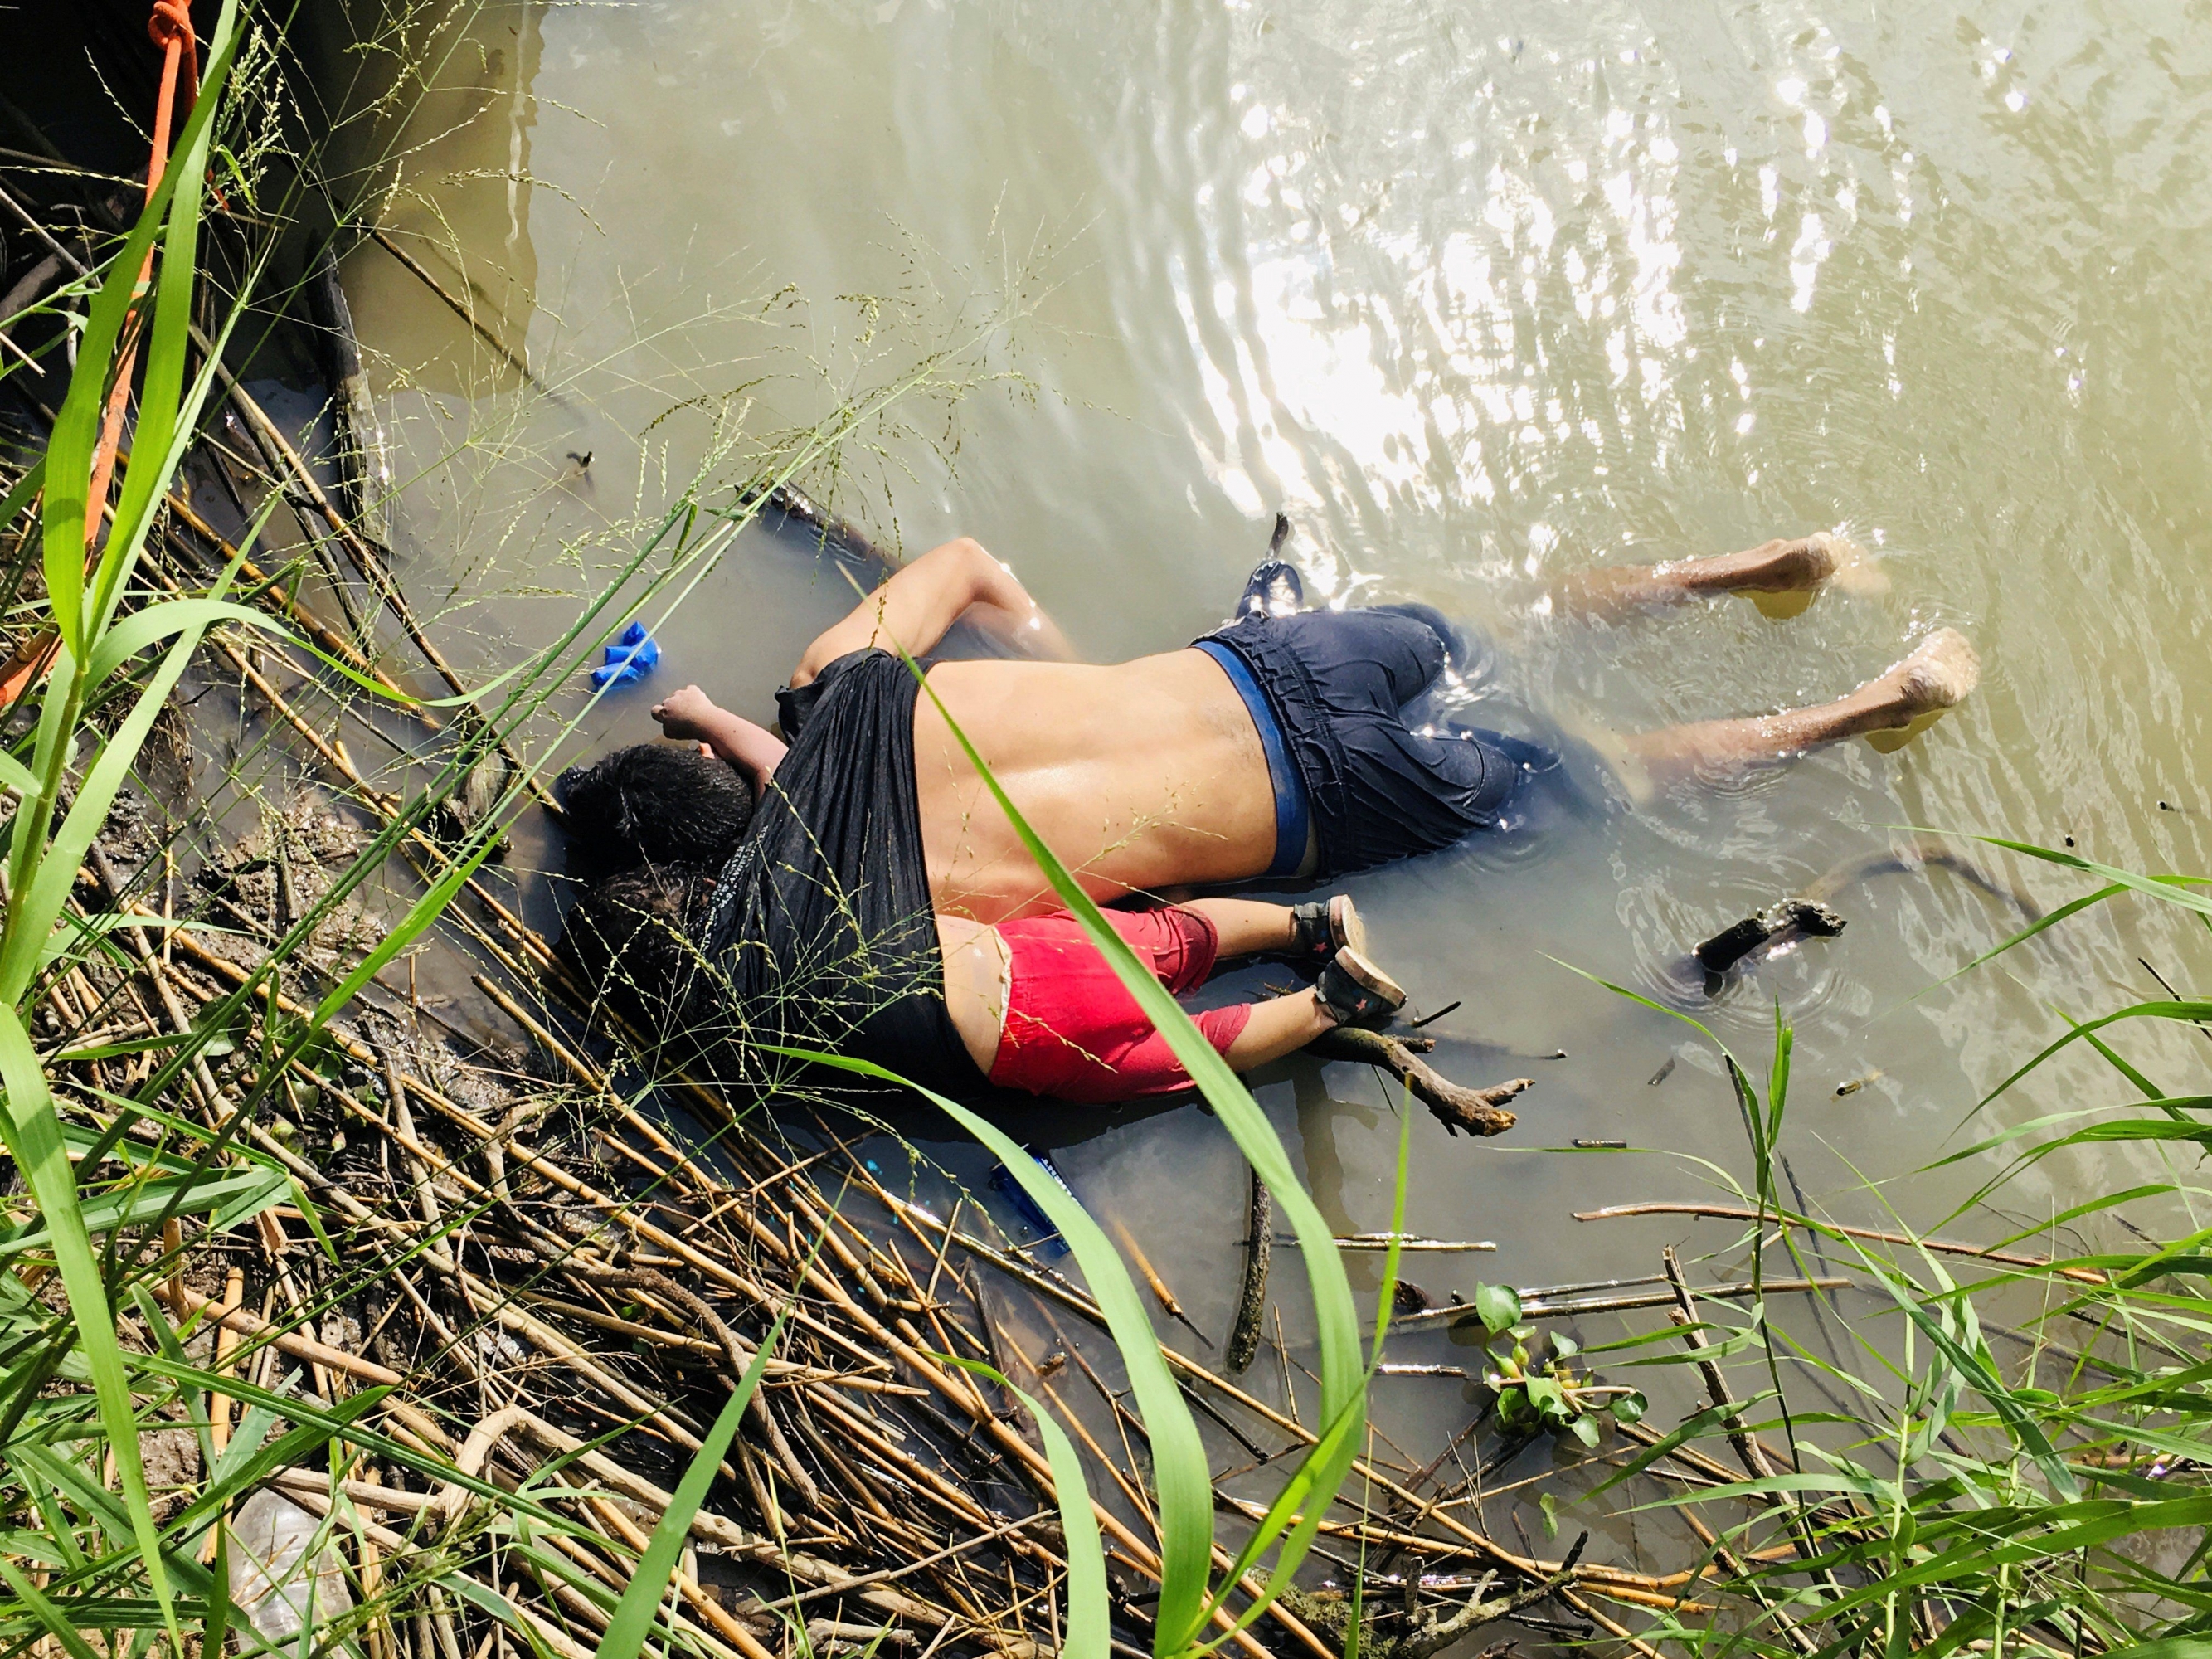 La foto que sacudió al mundo: Un padre y su hija de 2 años ahogados a orillas del río Bravo